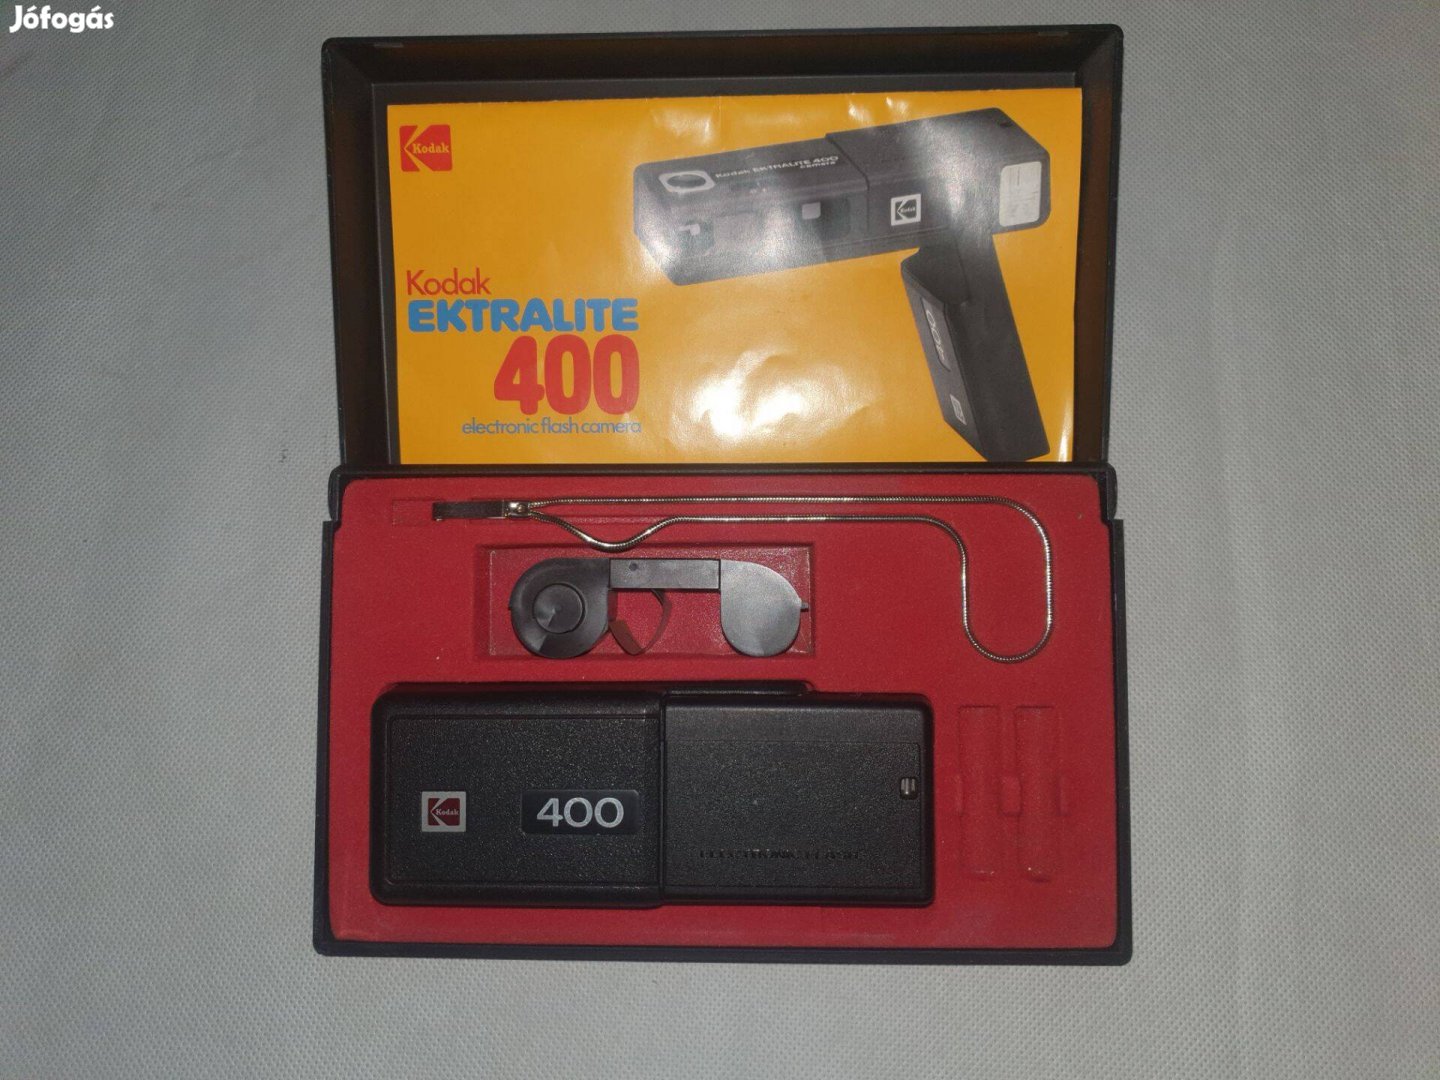 Kodak Ektralite 400 instamatic 110-es fényképezőgép